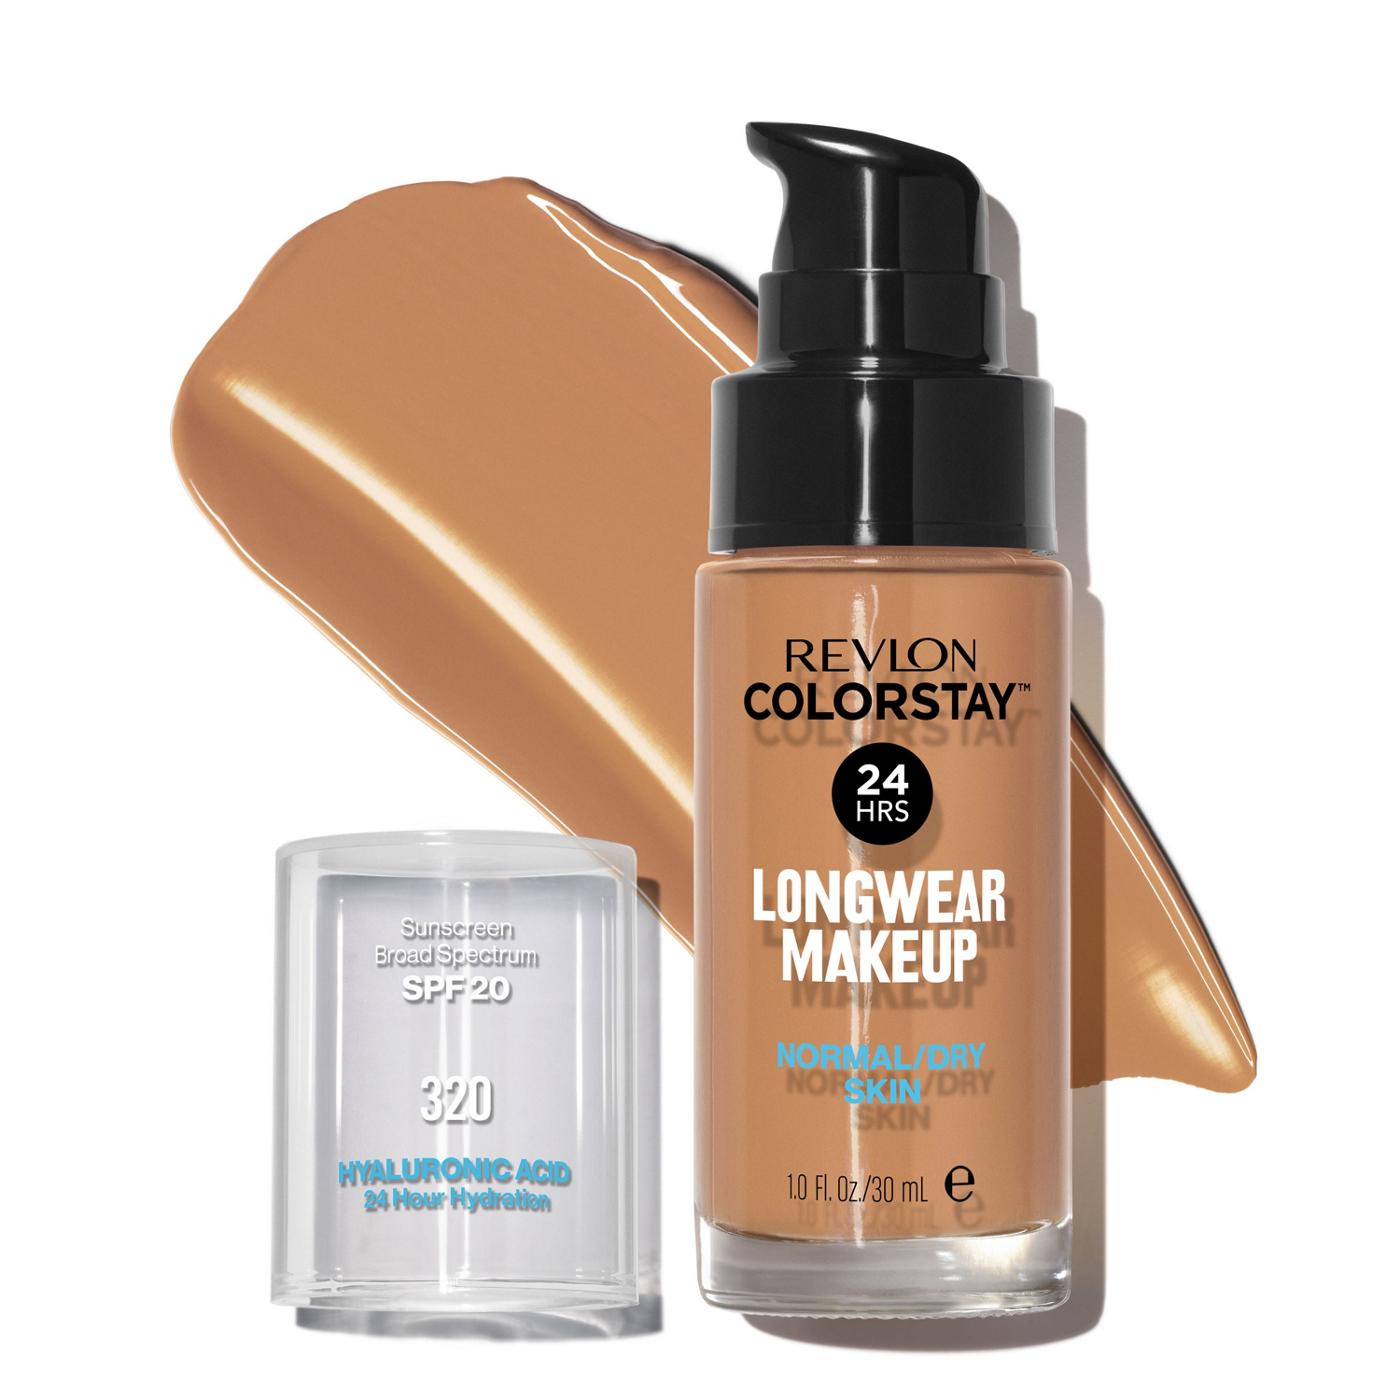 Revlon ColorStay Makeup for Normal/Dry Skin, 320 True Beige; image 1 of 6